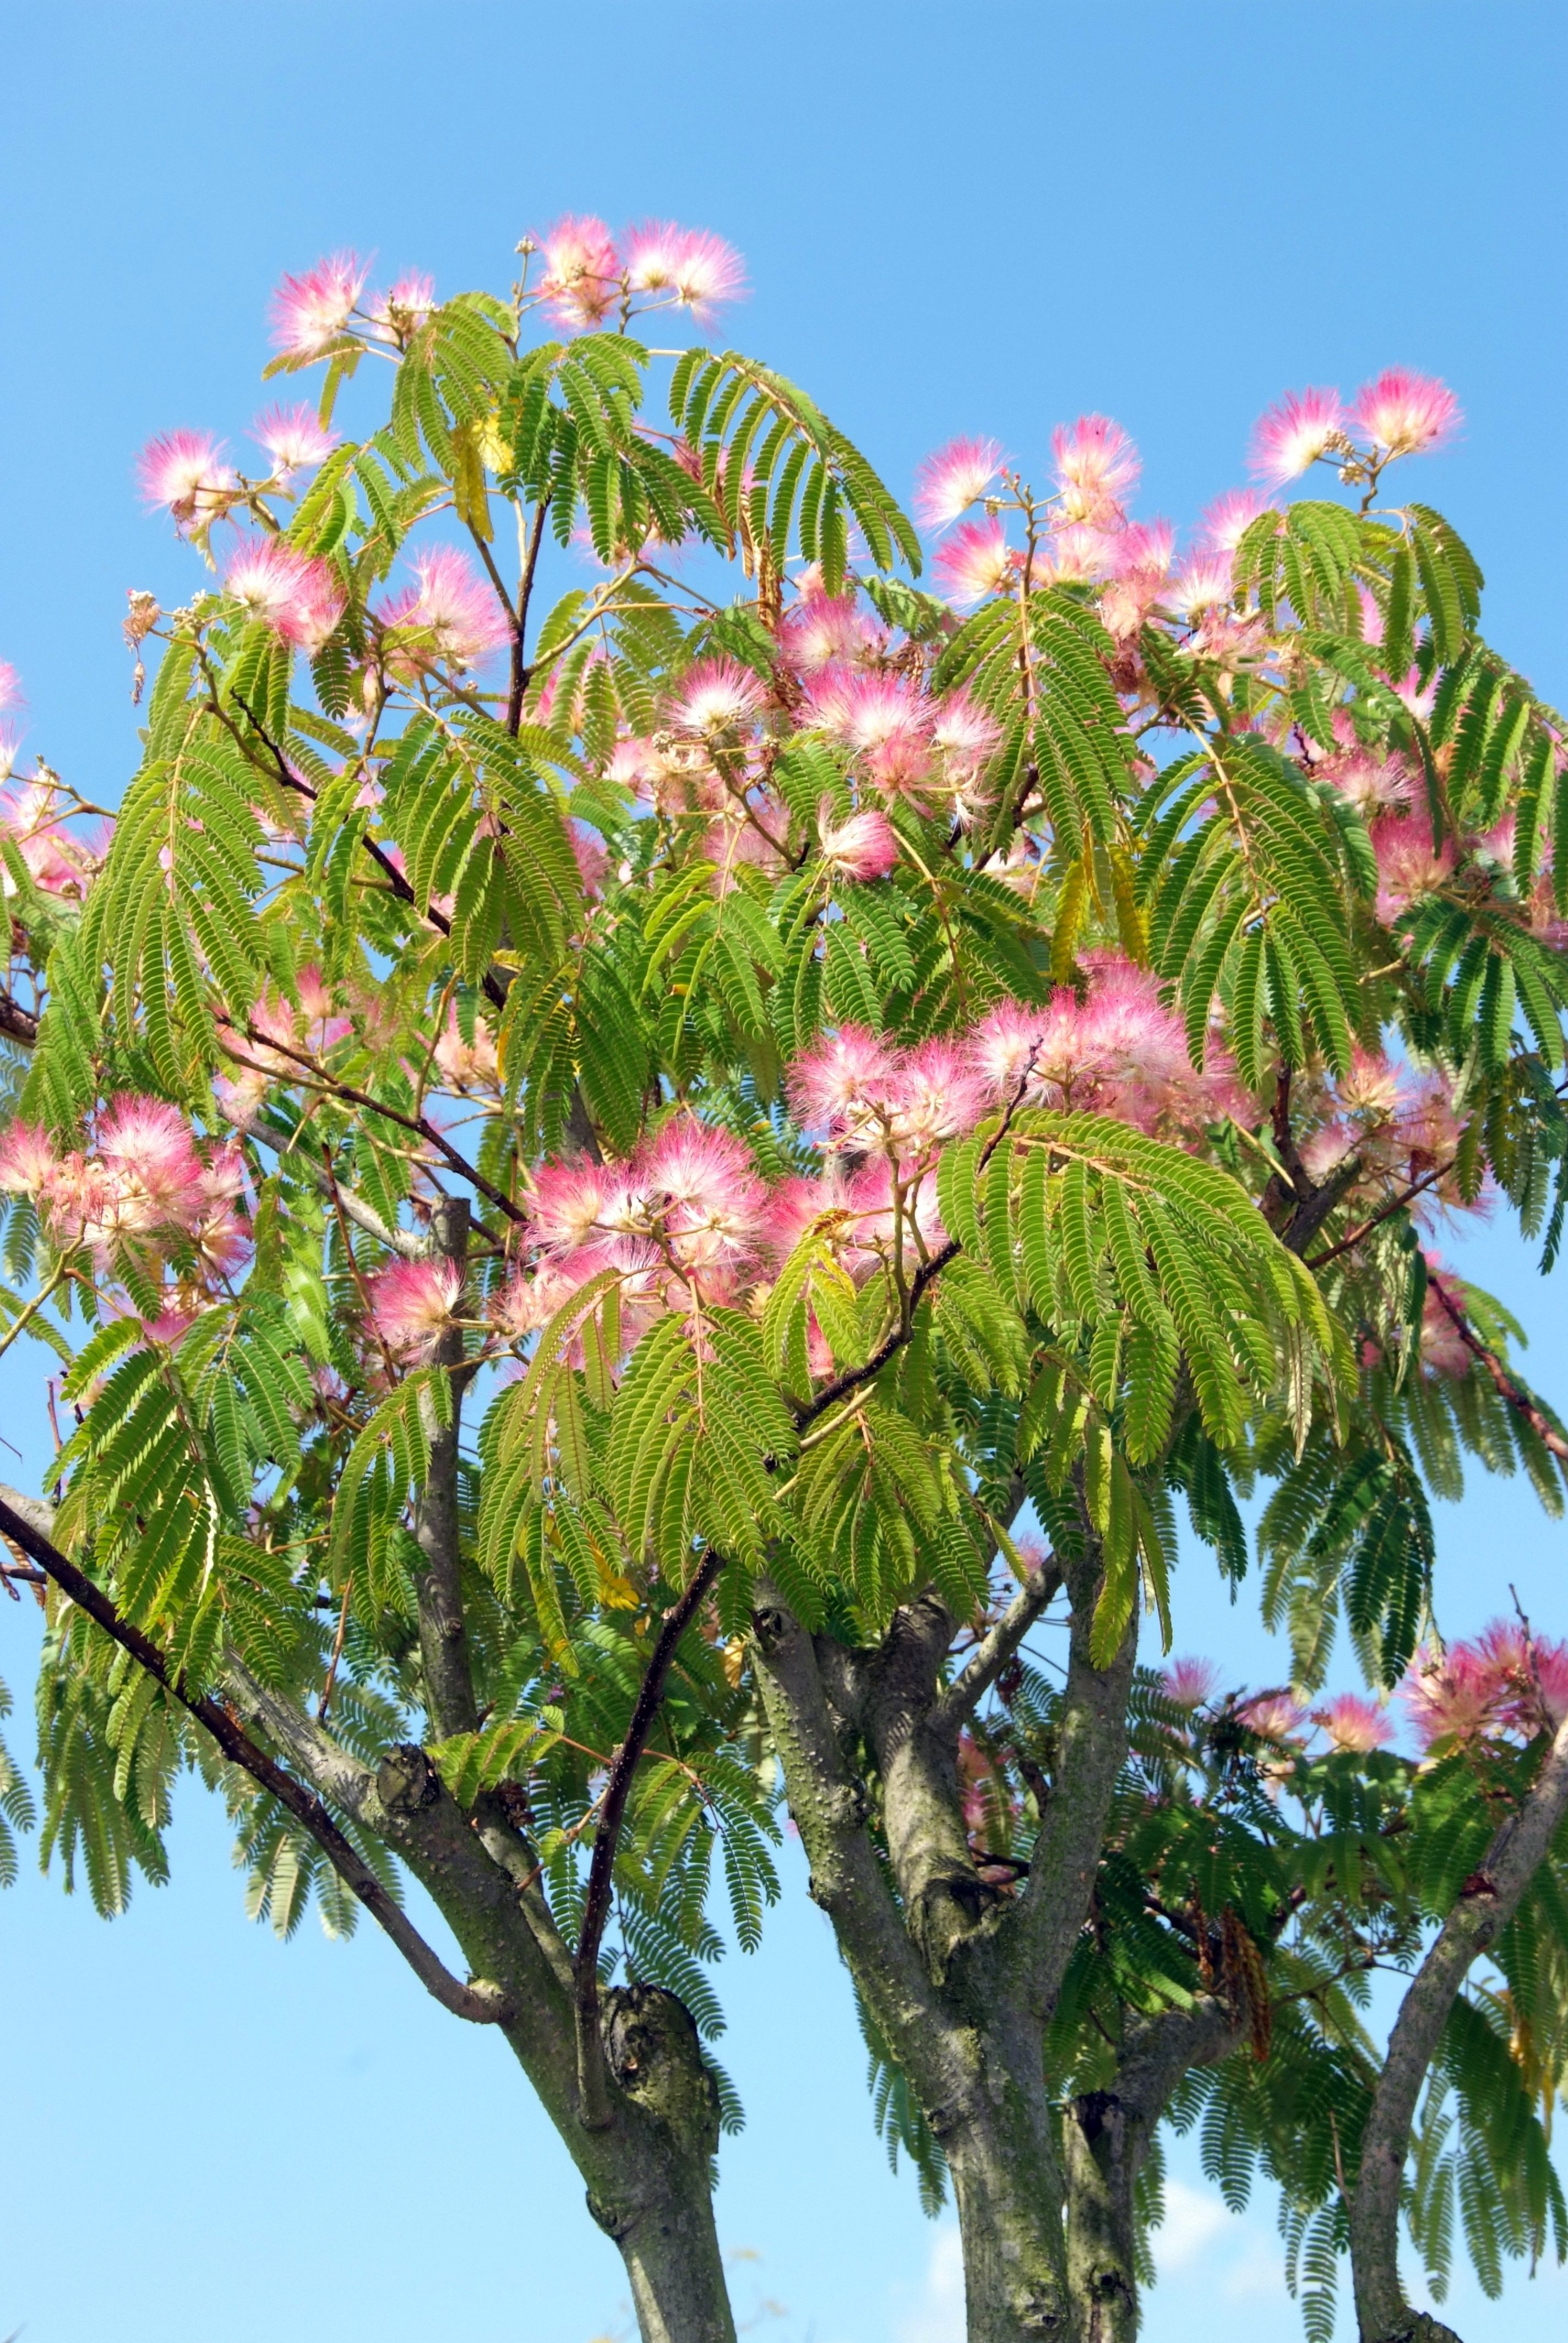 Цветущие деревья в крыму фото и названия